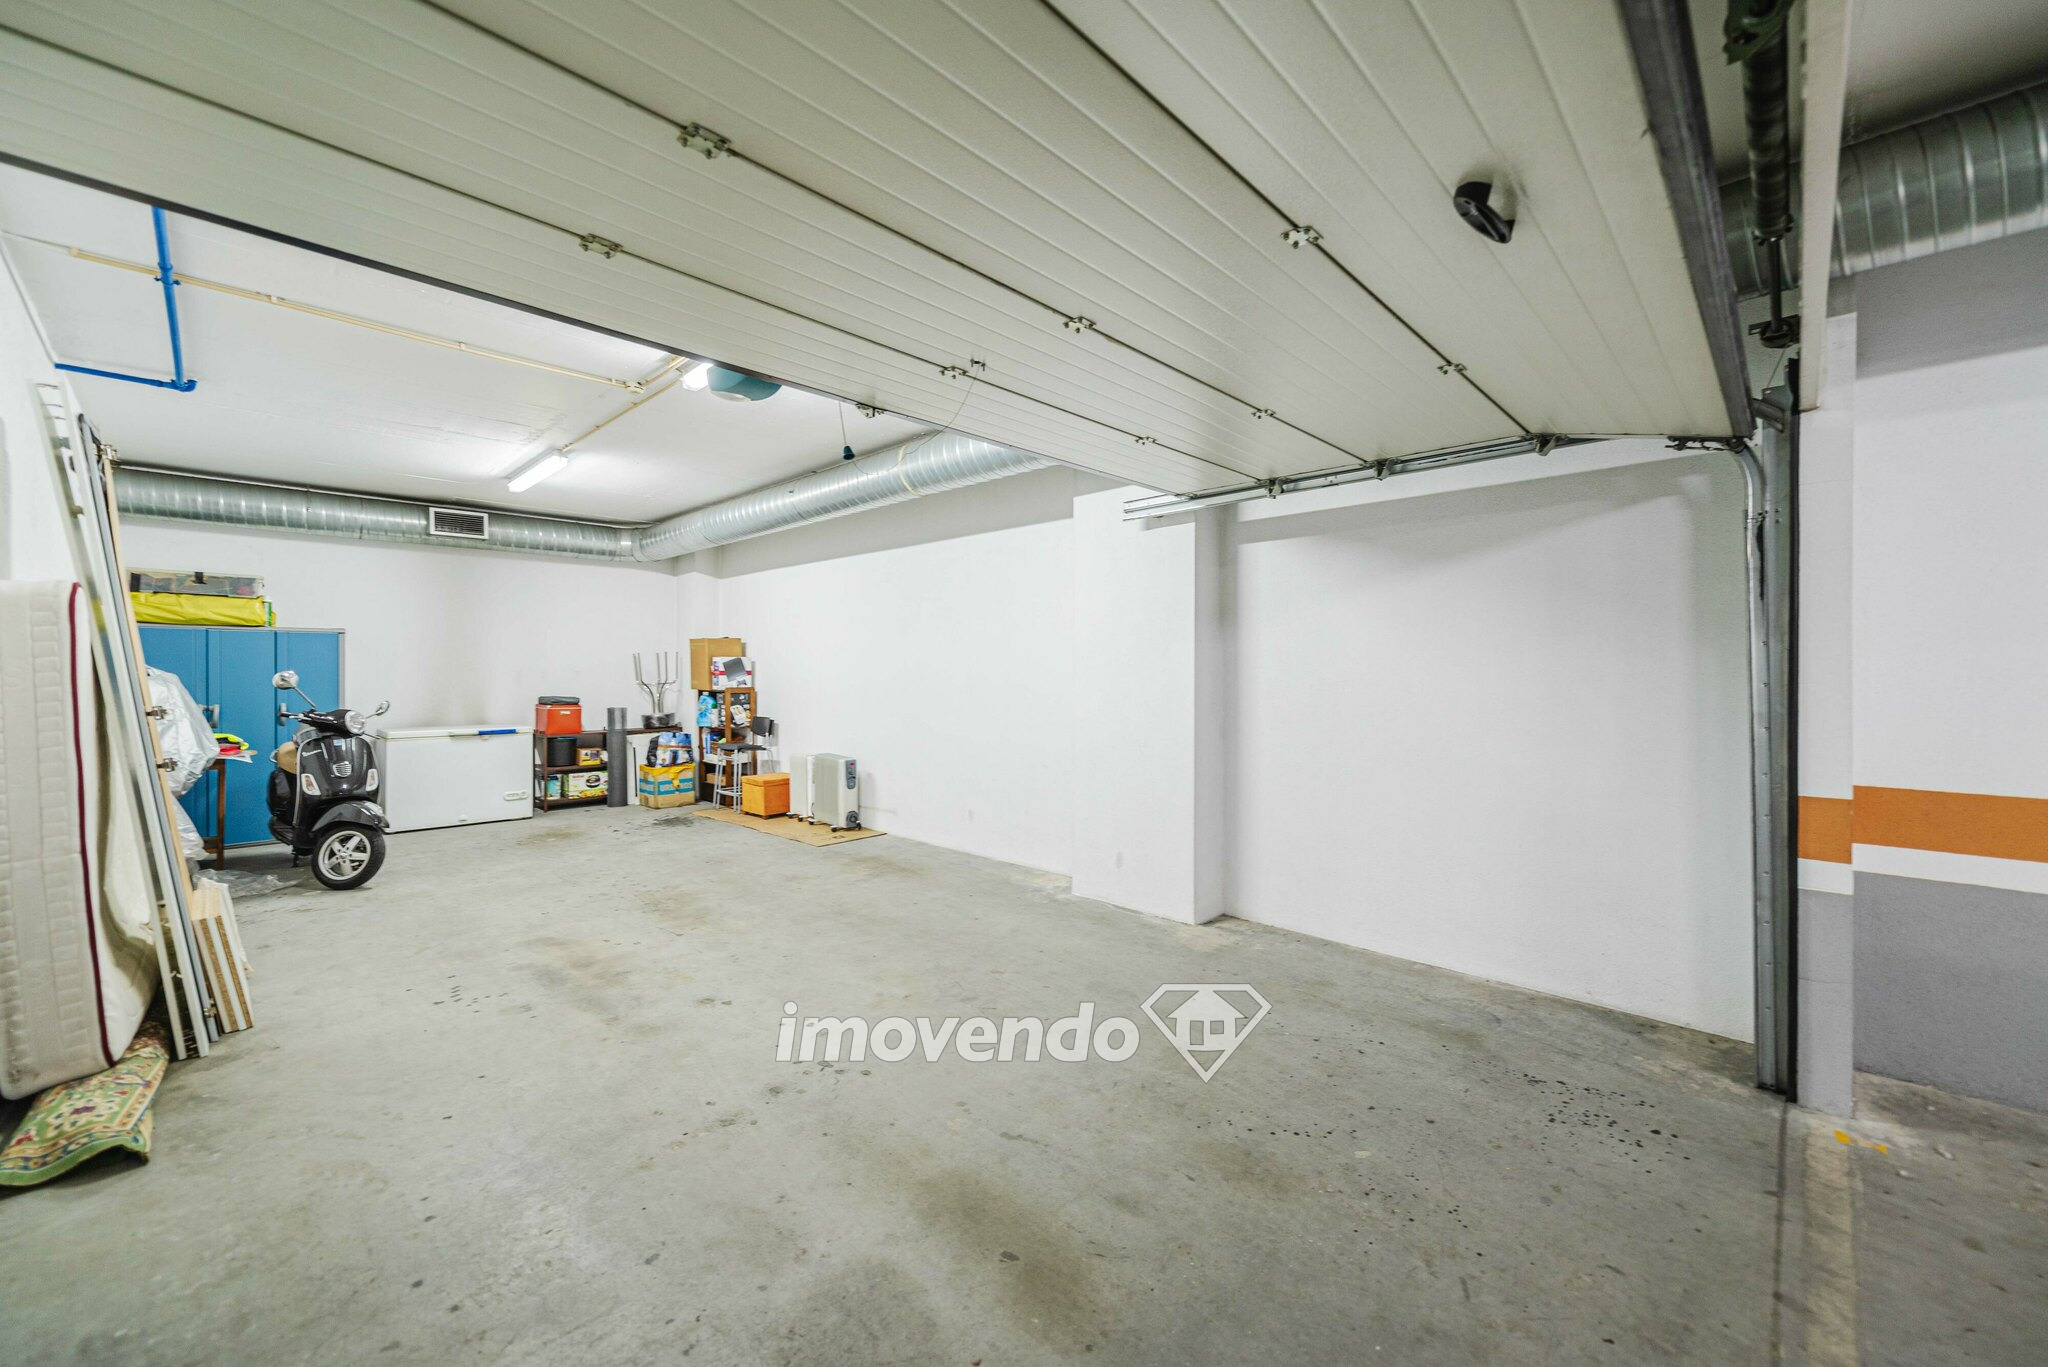 Apartamento T3 com garagem e cozinha equipada, nas Colinas do Cruzeiro